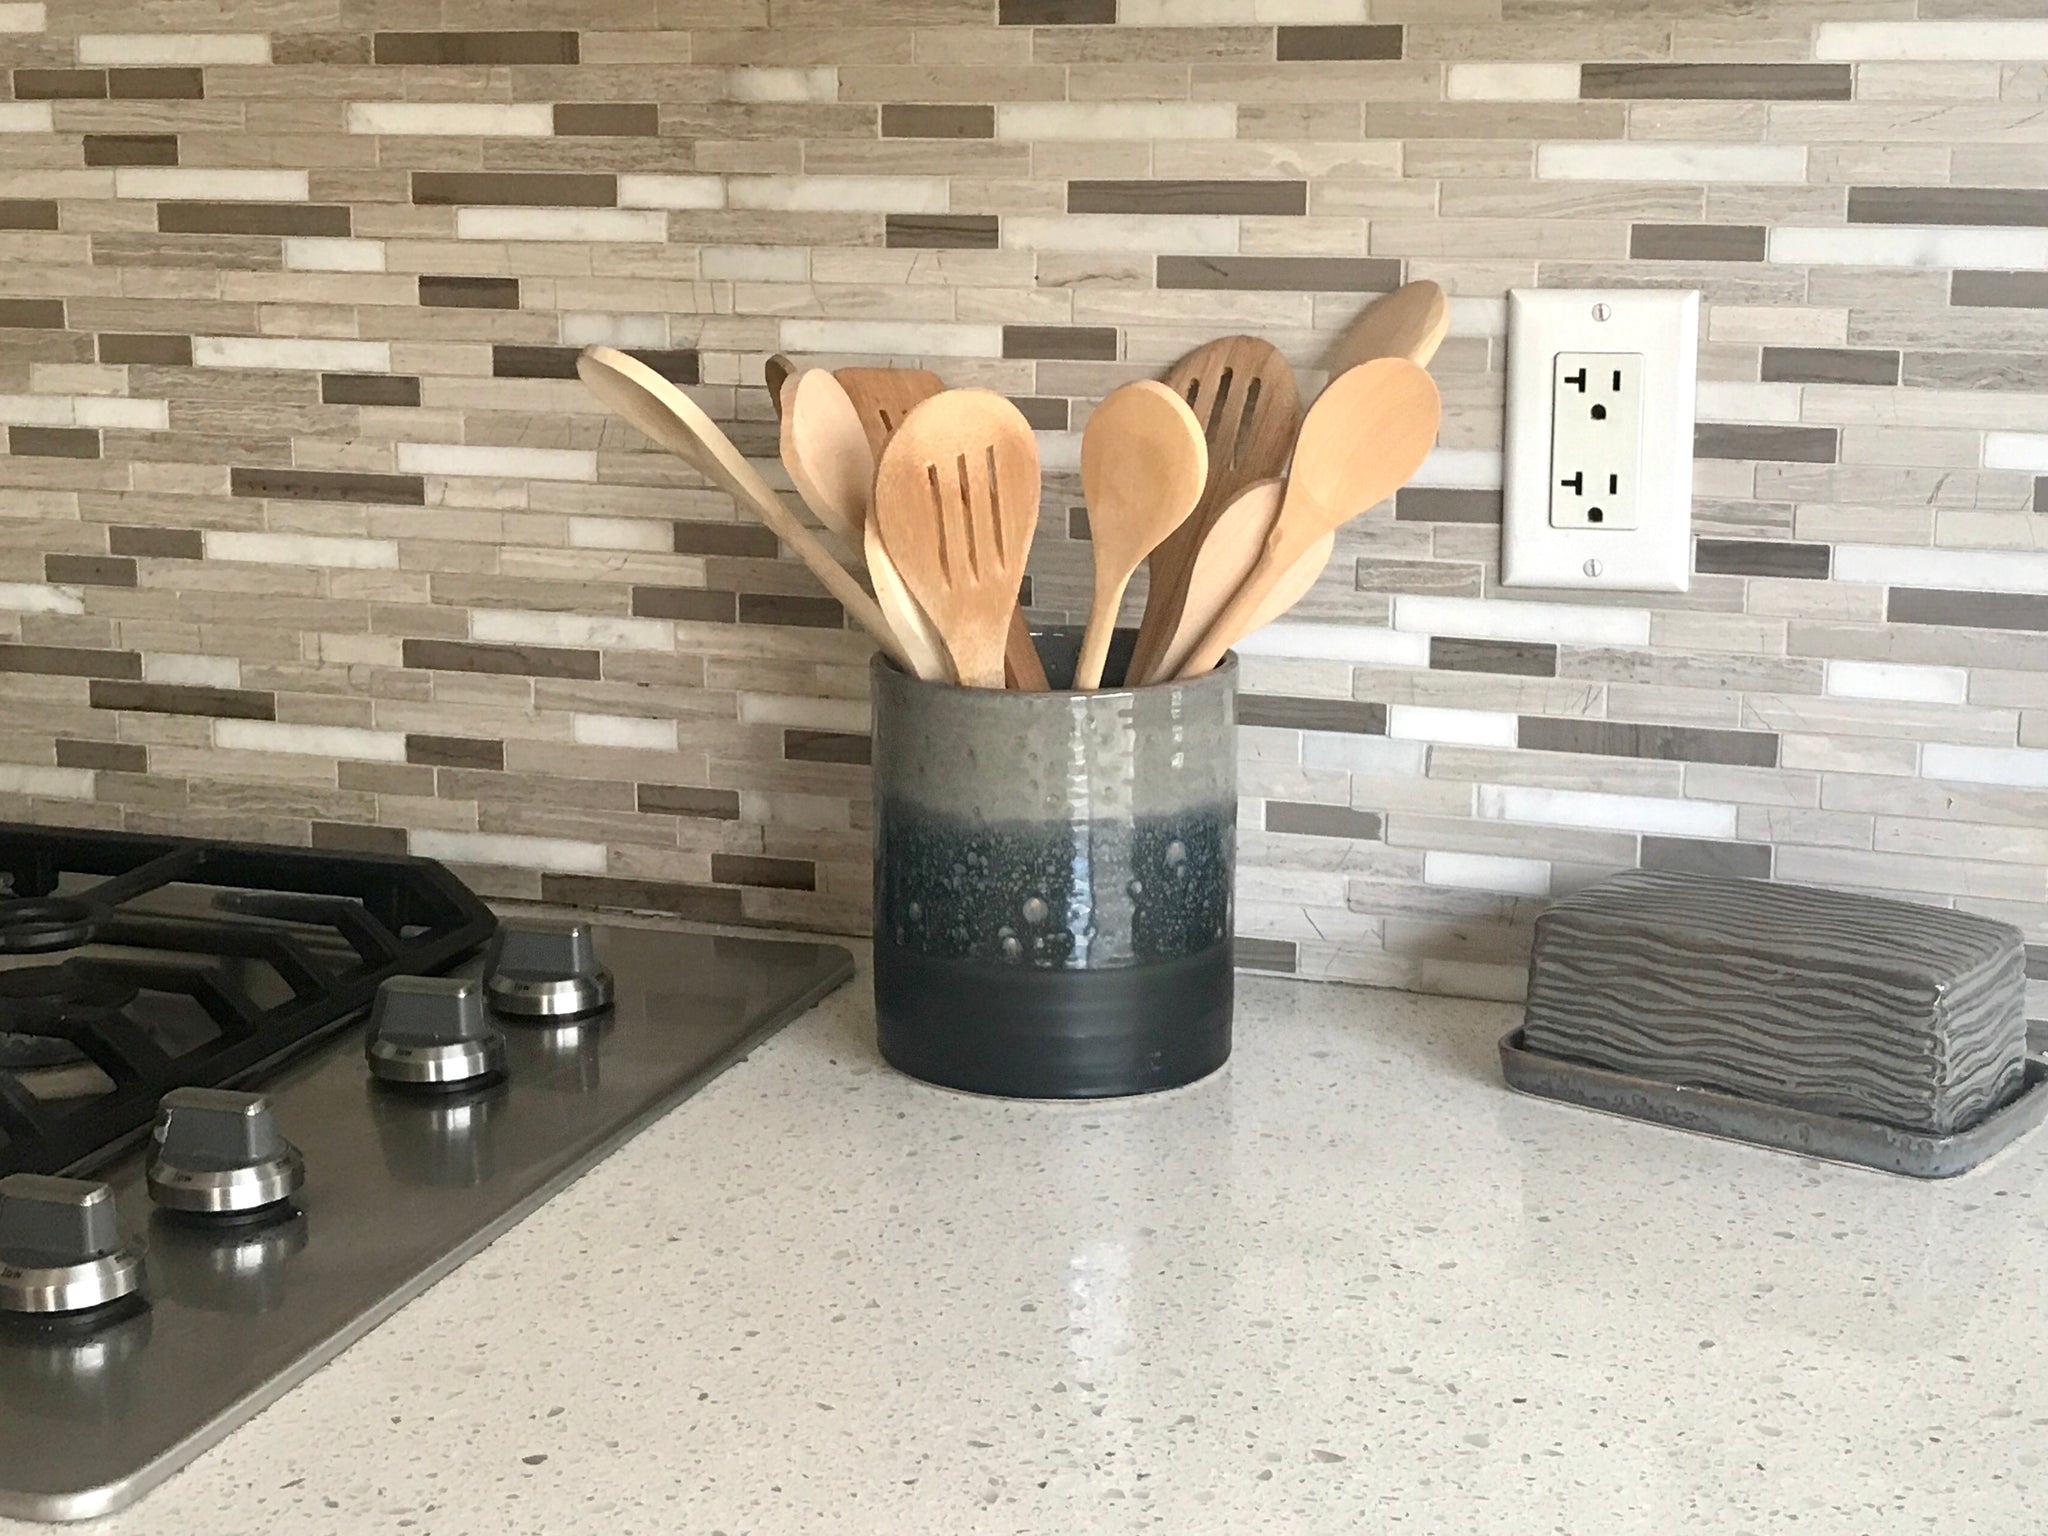 utensil holder on kitchen counter